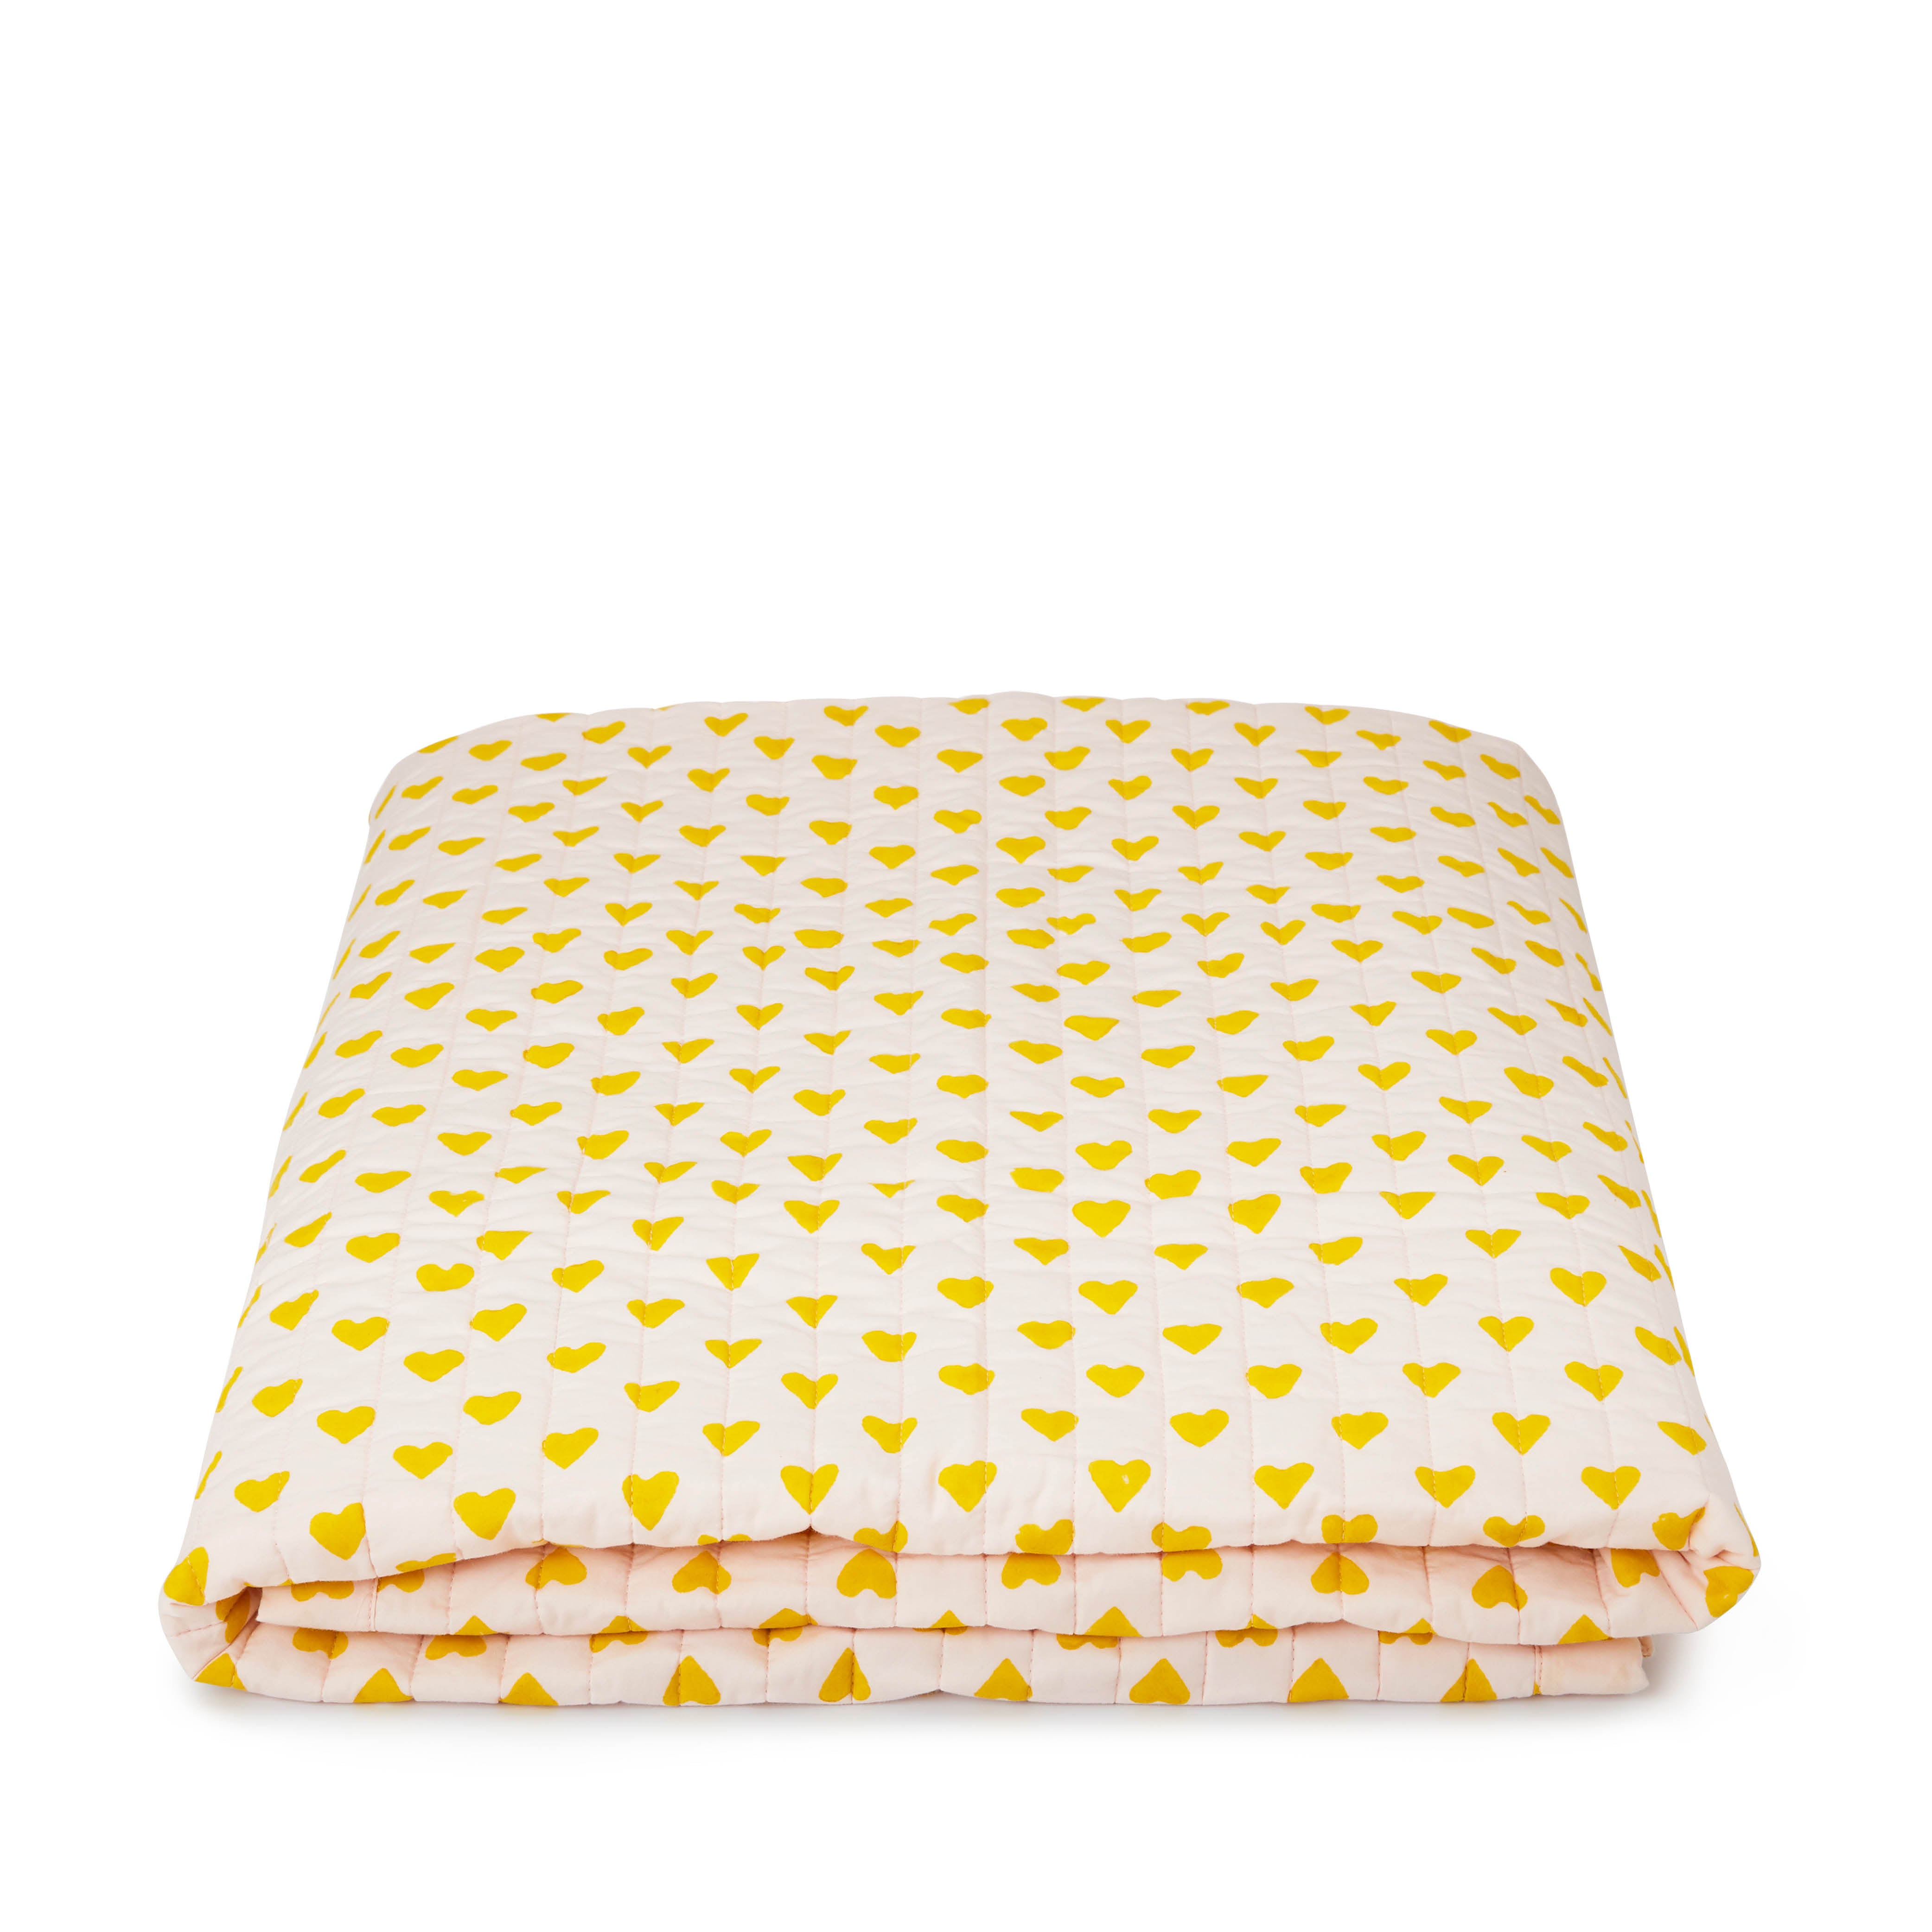 Tagesdecke Spieldecke Krabbeldecke Picknickdecke Decke in yellow heart für die ganze Familie - Holi and Love - kinder und konsorten düsseldorf